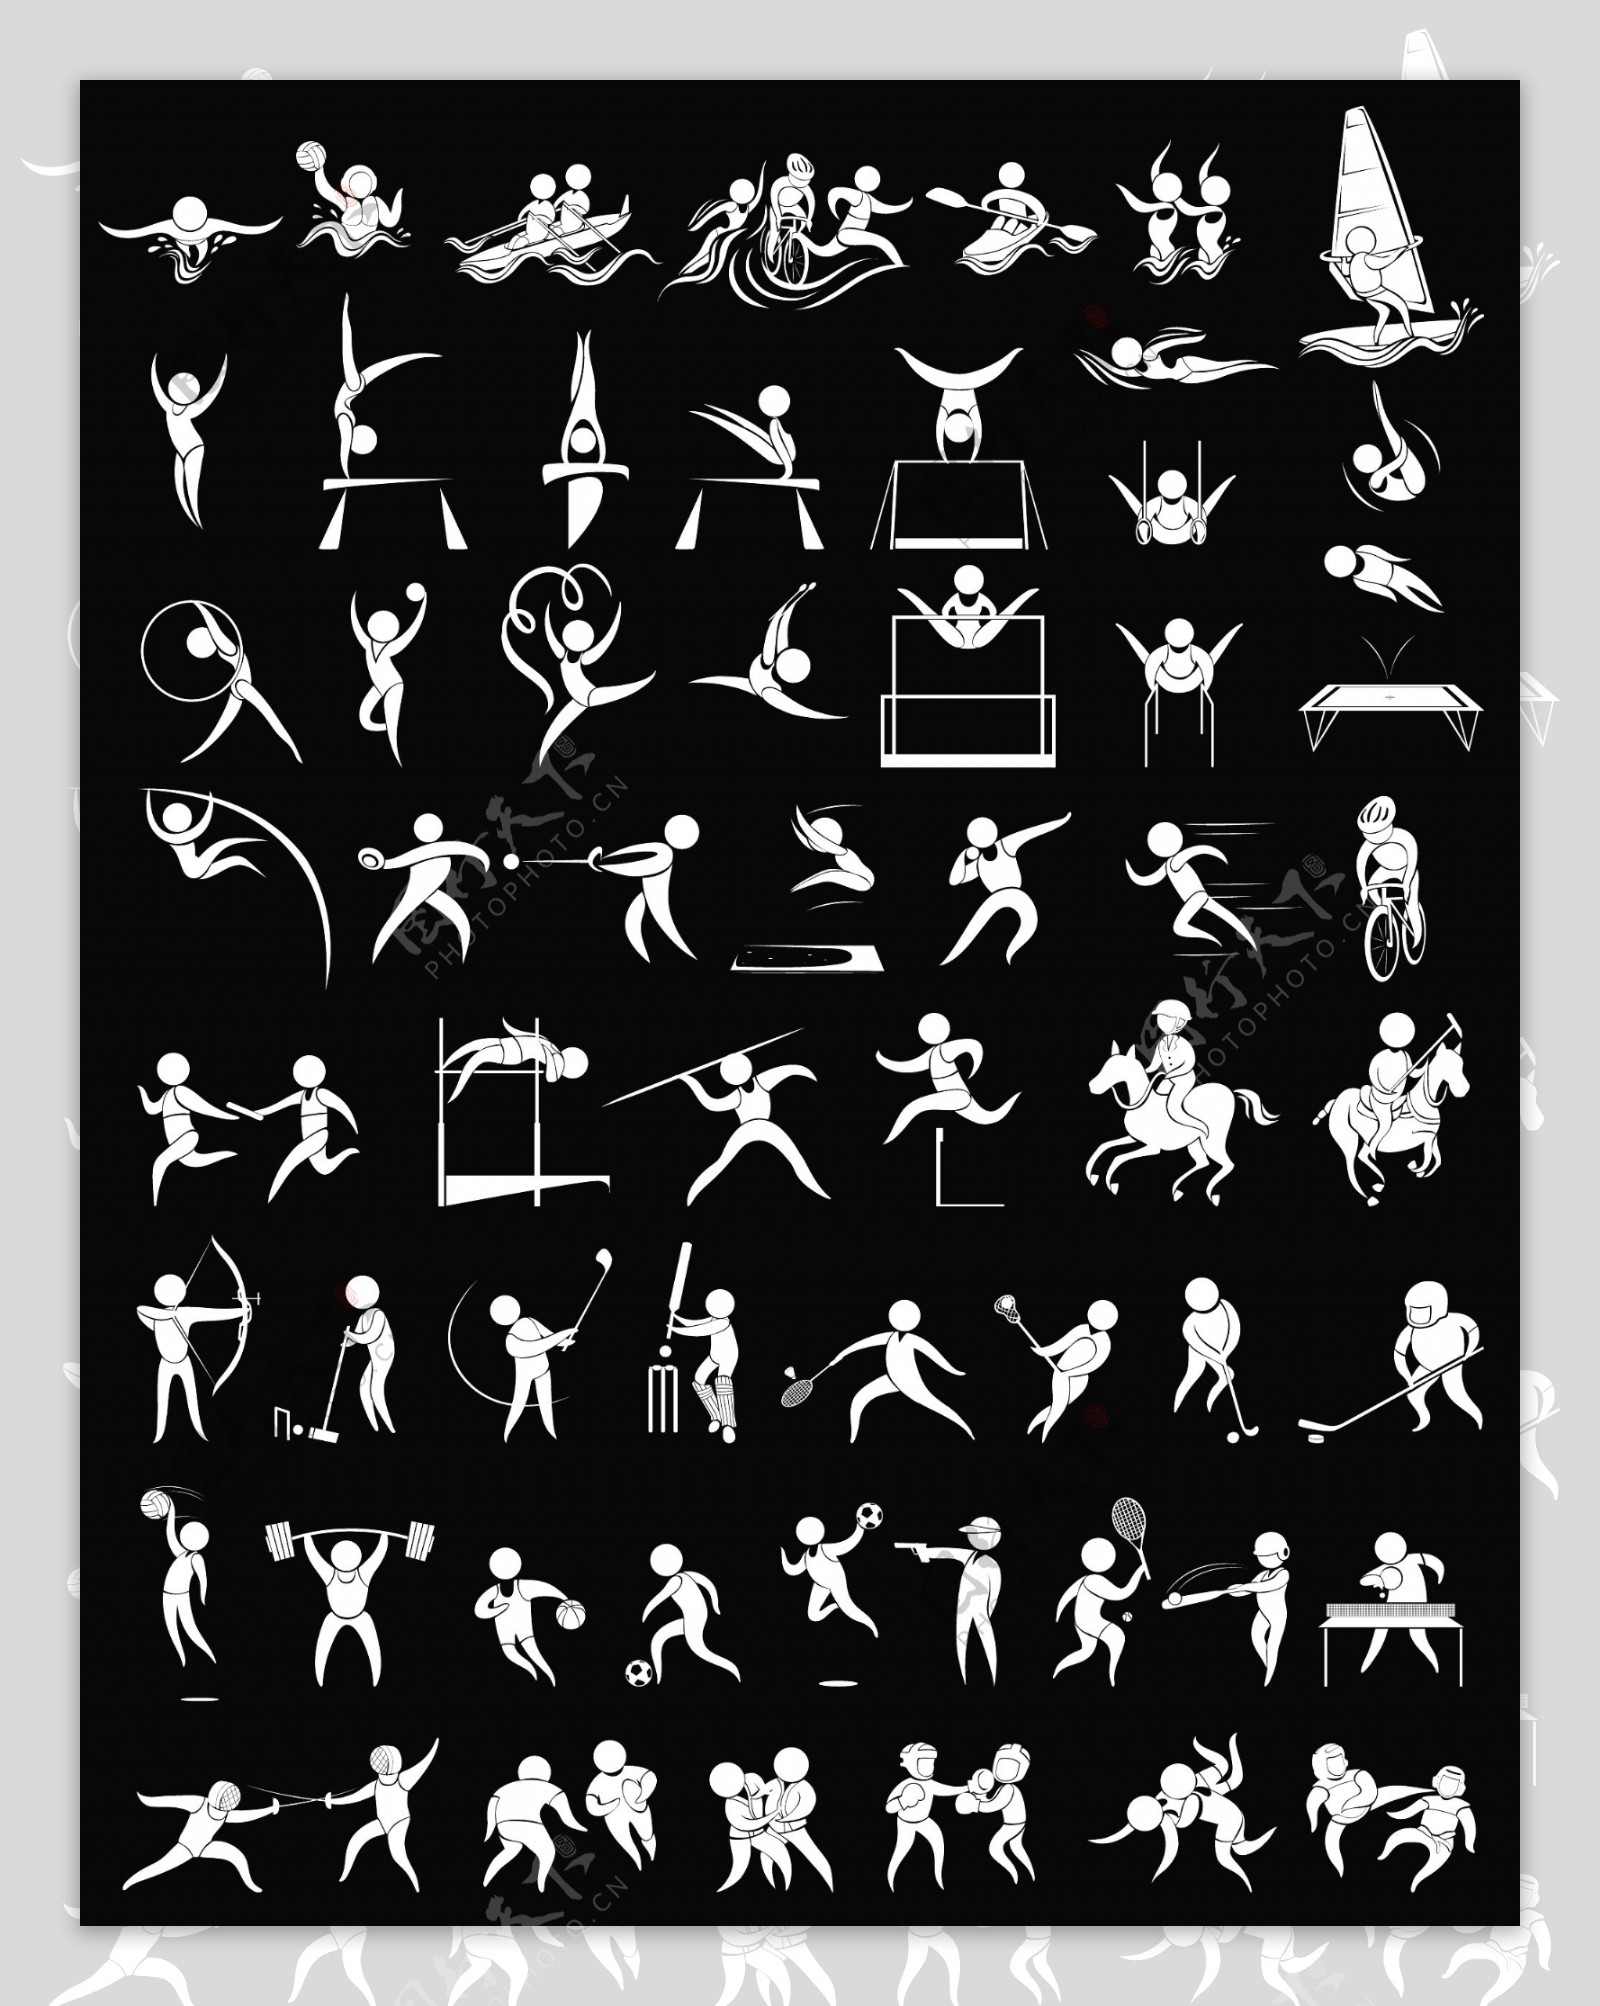 许多体育插图的运动图标